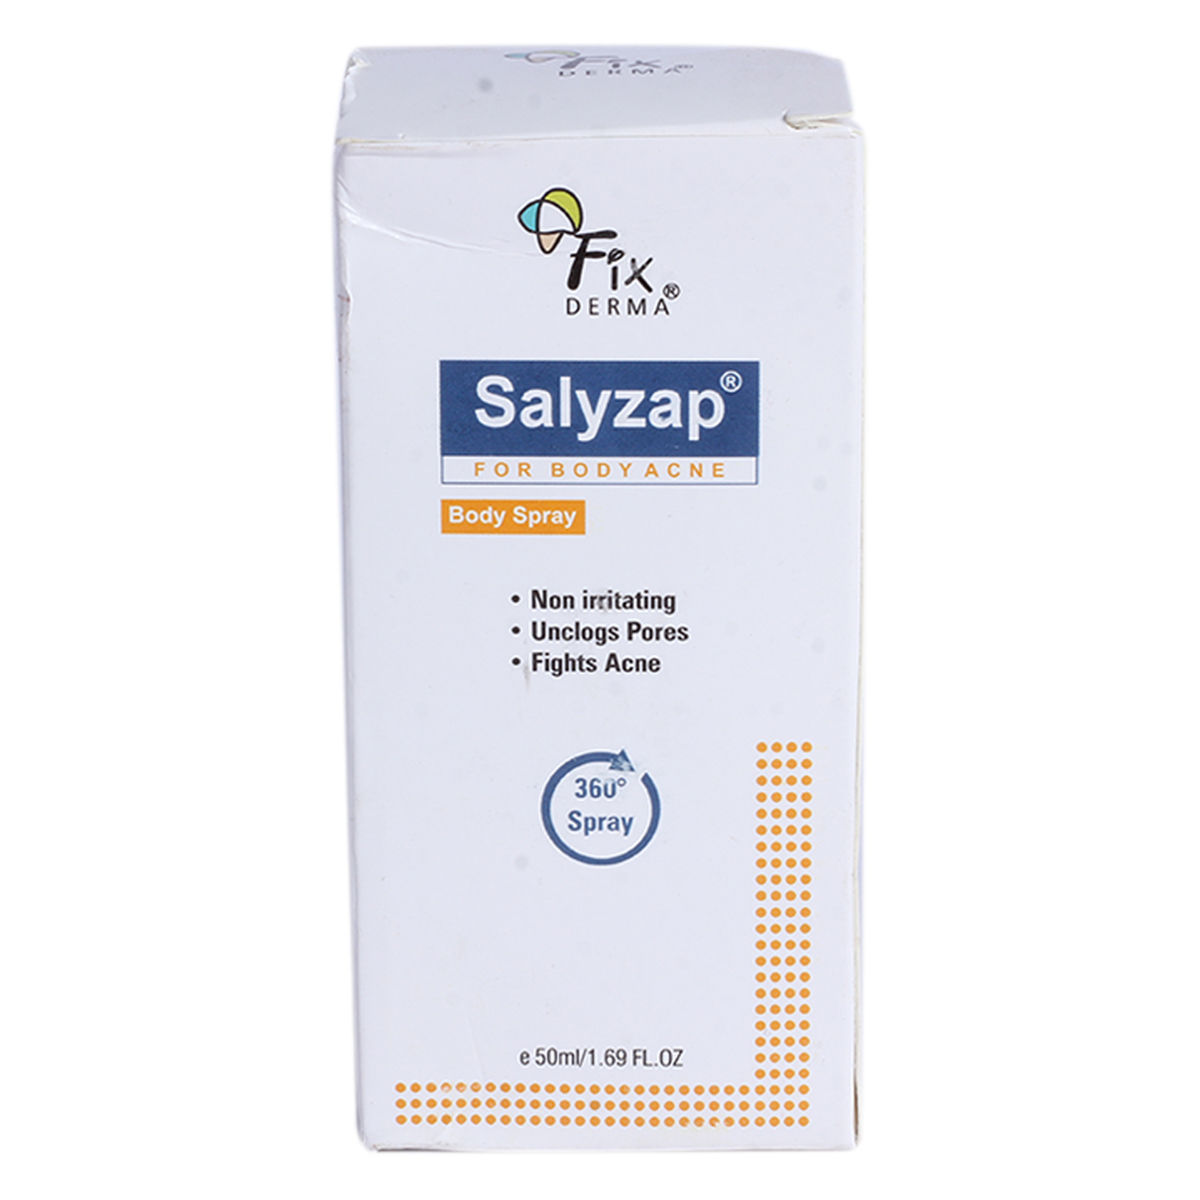 Buy Salyzap Body Spray for Body Acne, 50 gm Online